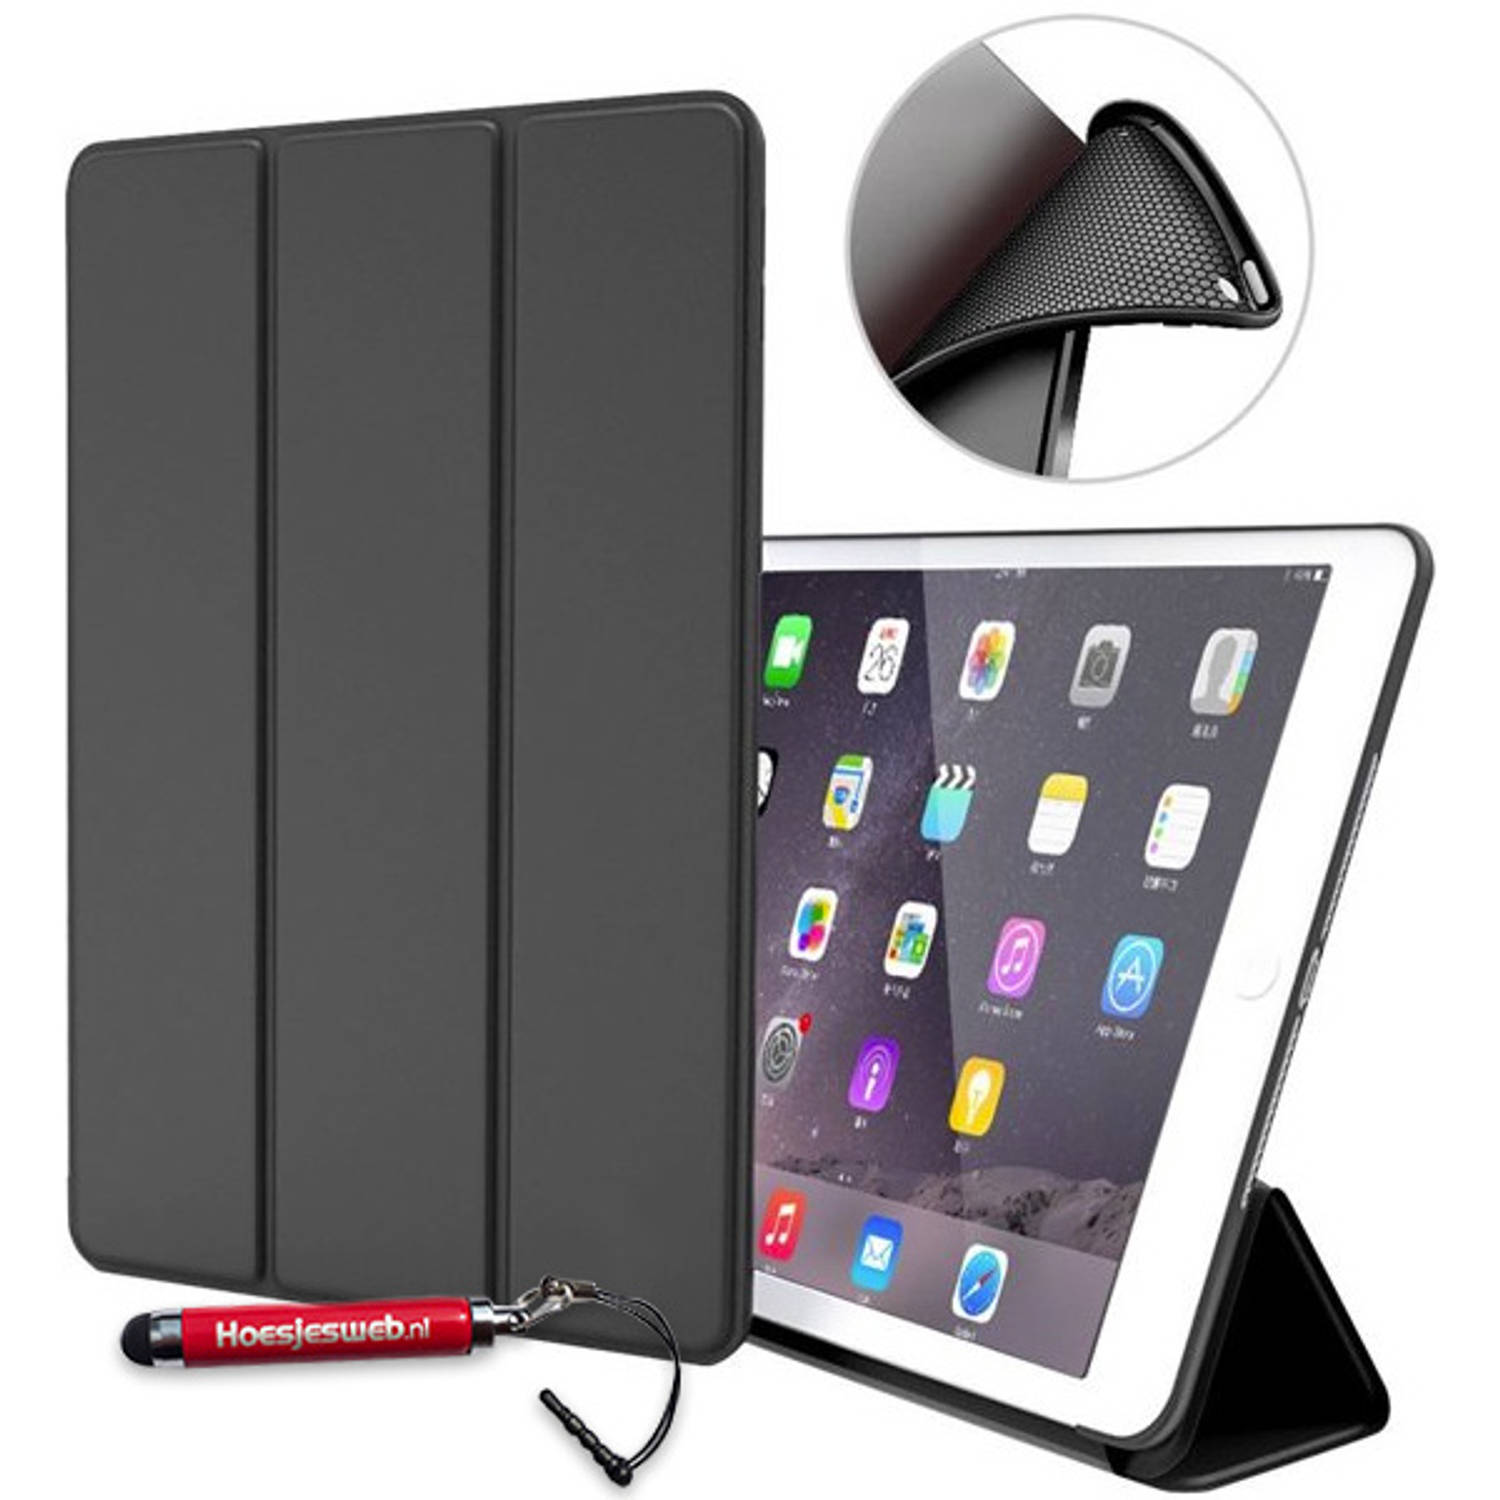 Hem Apple Ipad Air 2 Bookcover Zwart Met Siliconenachterkant En Hoesjeswebstylus